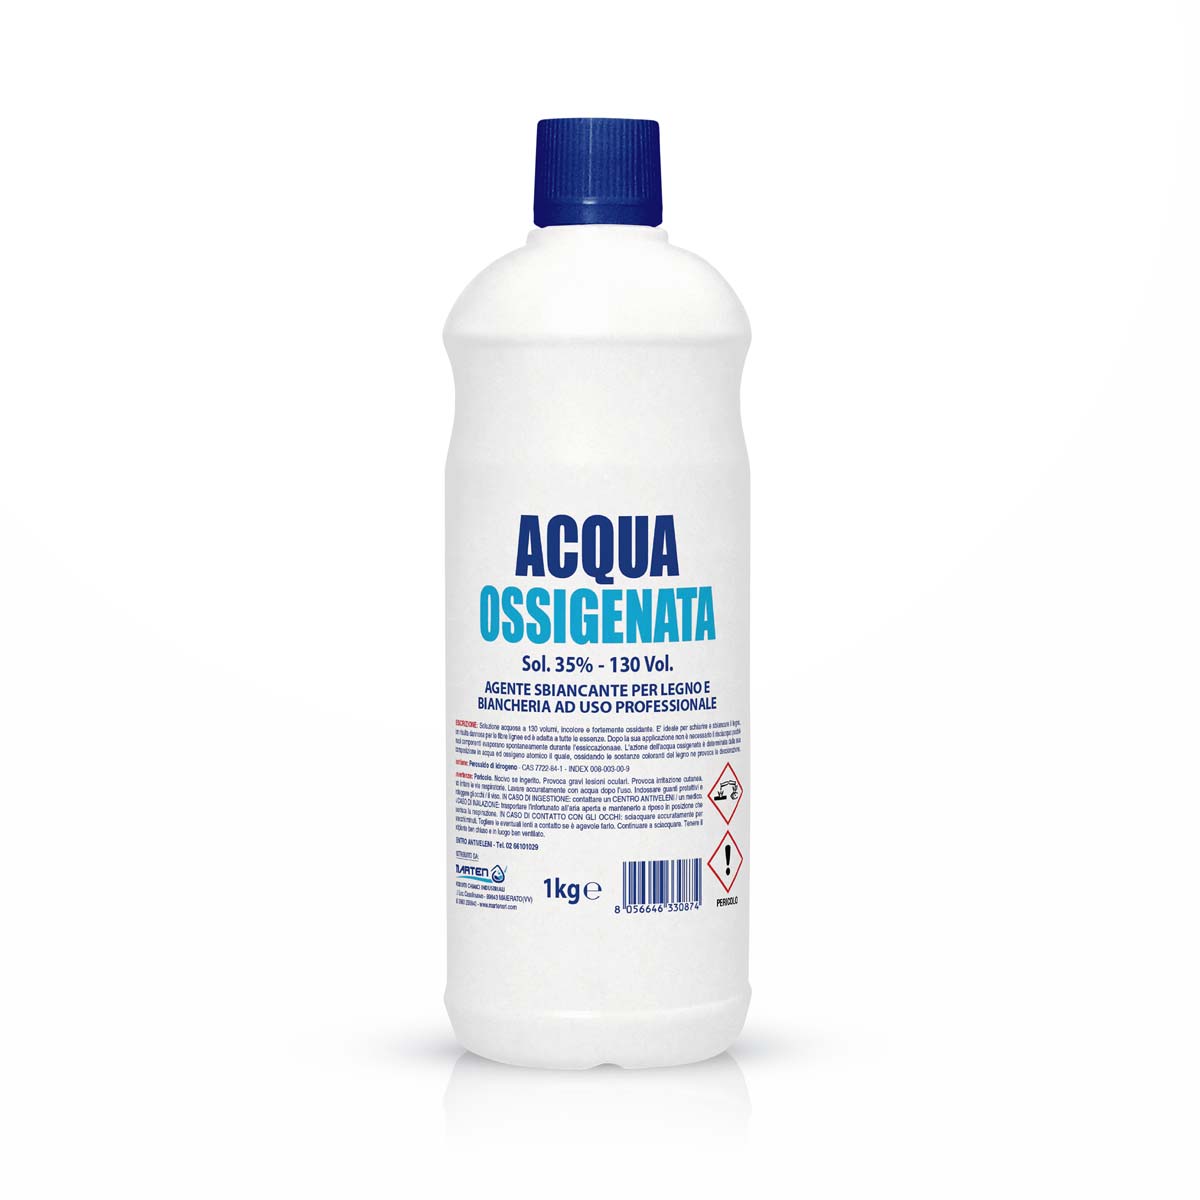 Acqua Ossigenata Sol. 35% - 130 vol. 1kg - MARTEN SRL